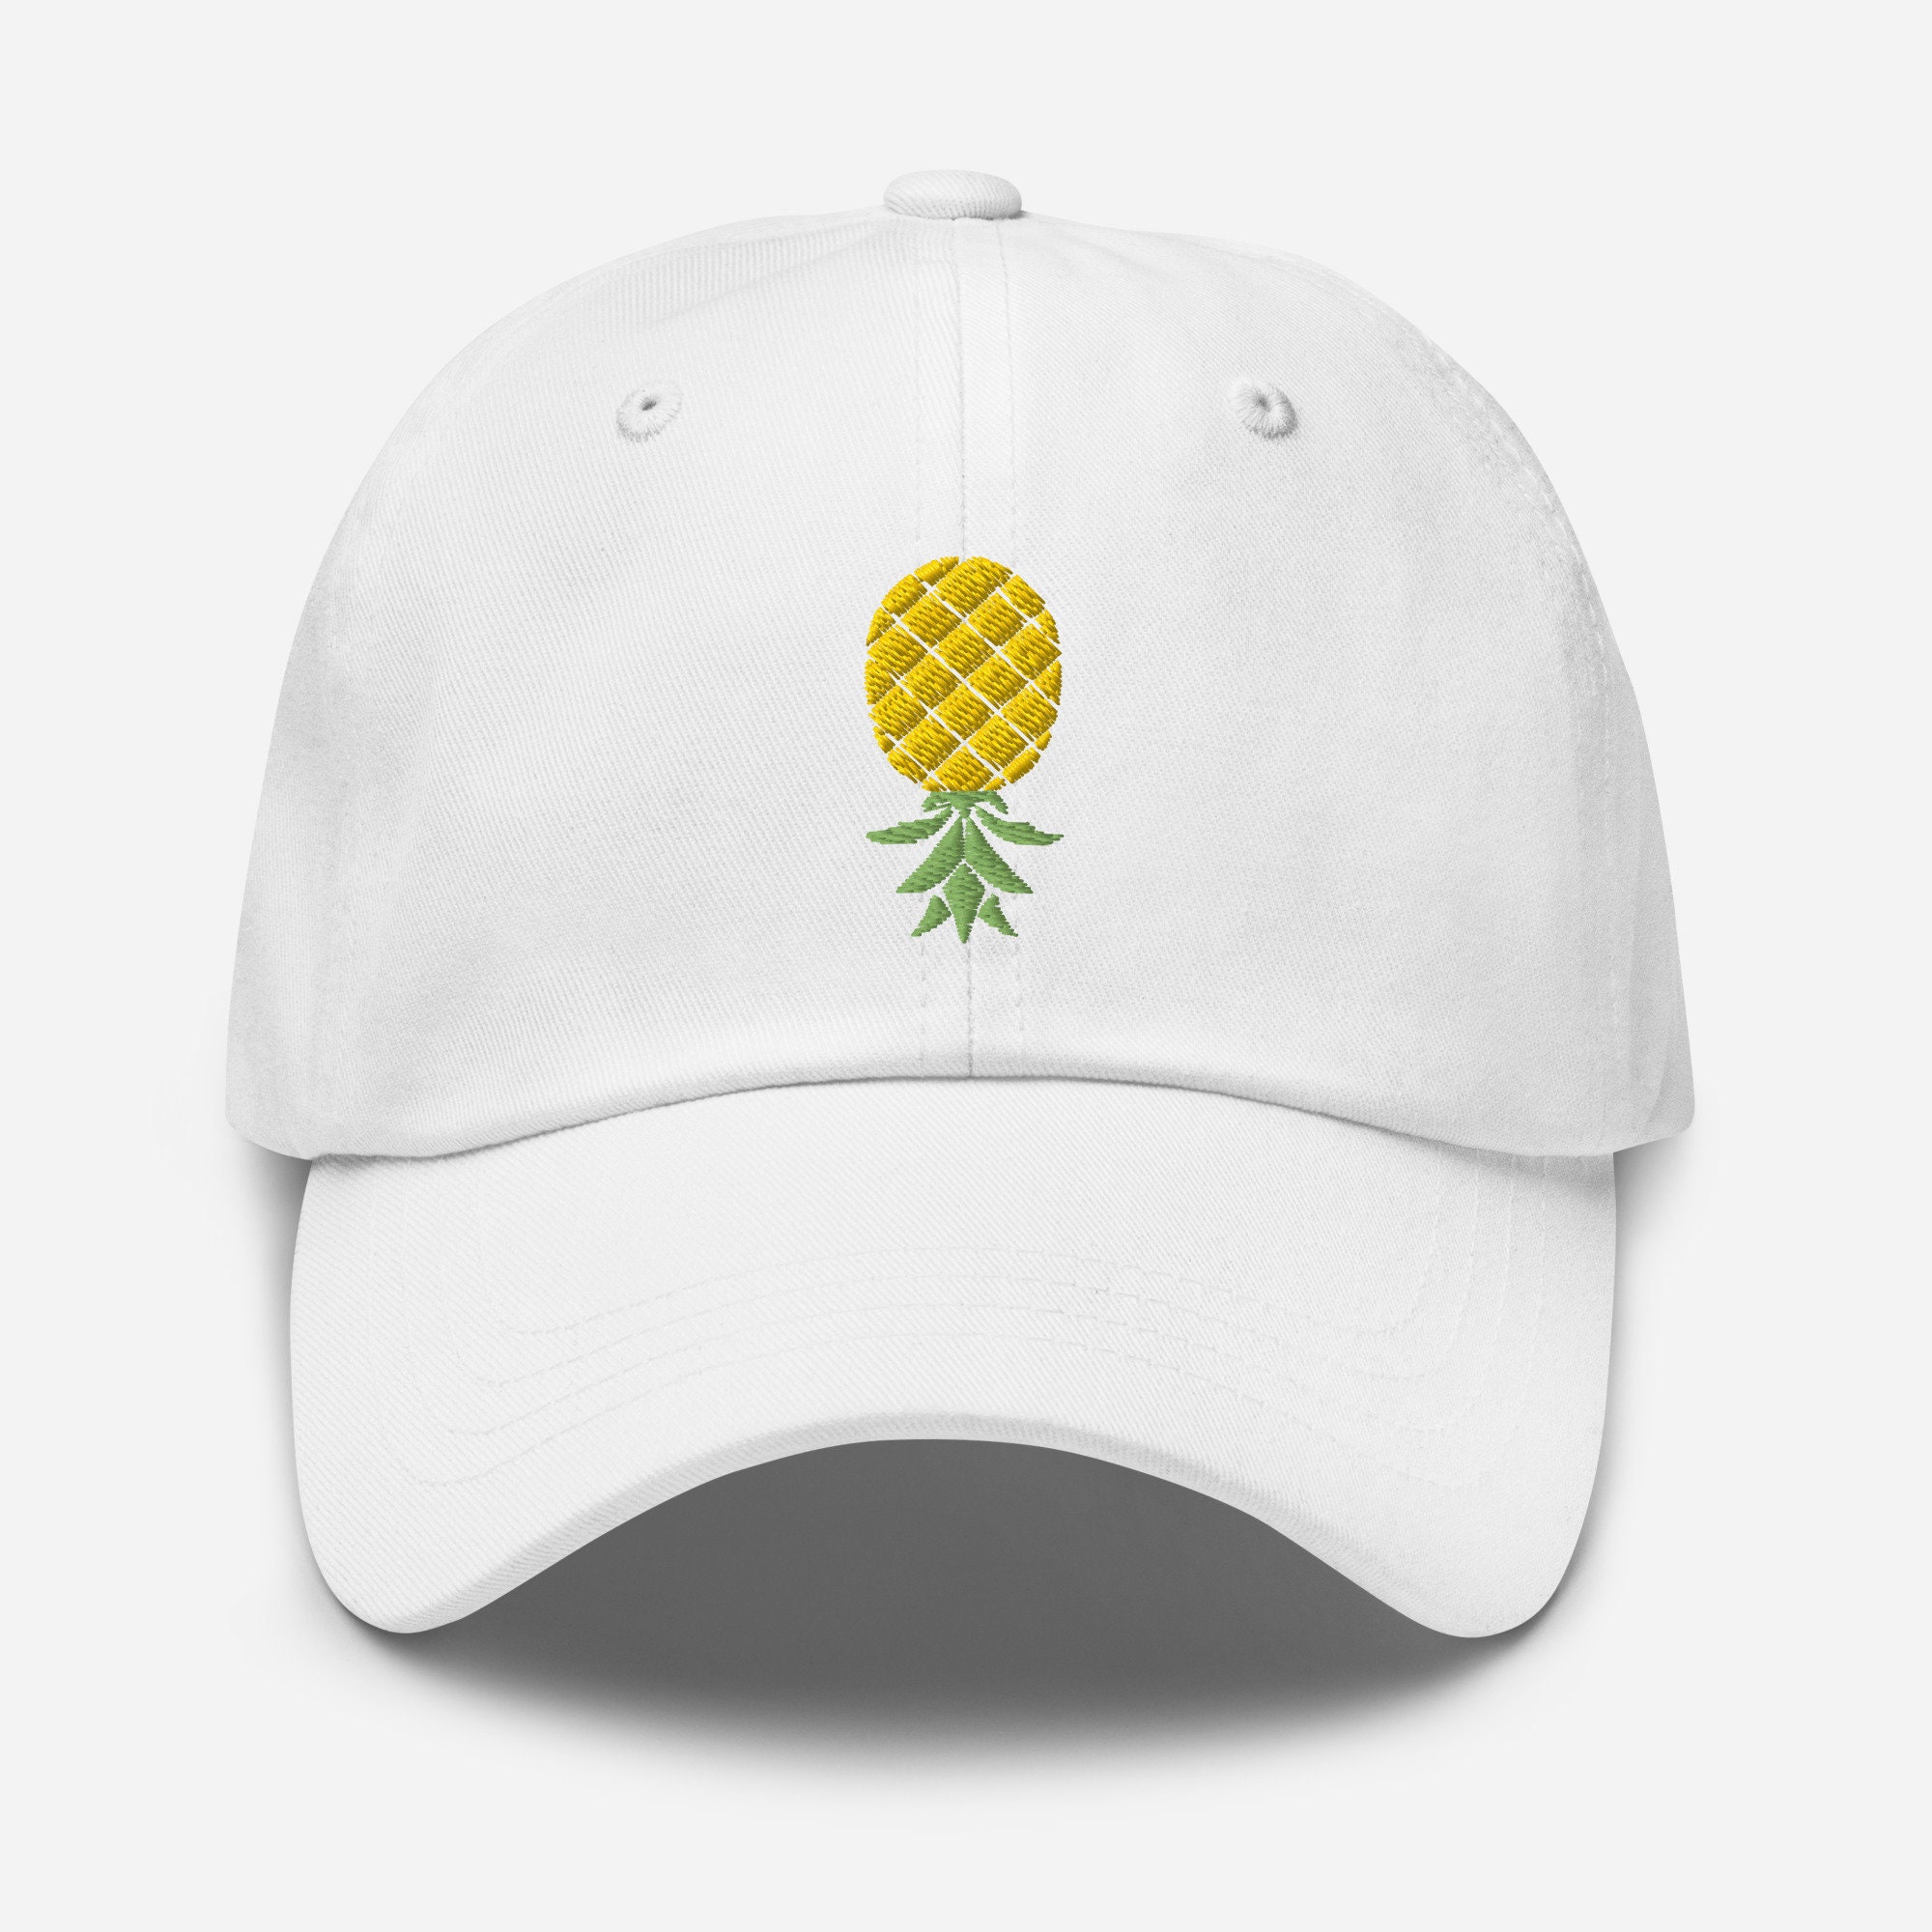 Swinger Lifestyle Hat Swingers Hat Upside Down Pineapple